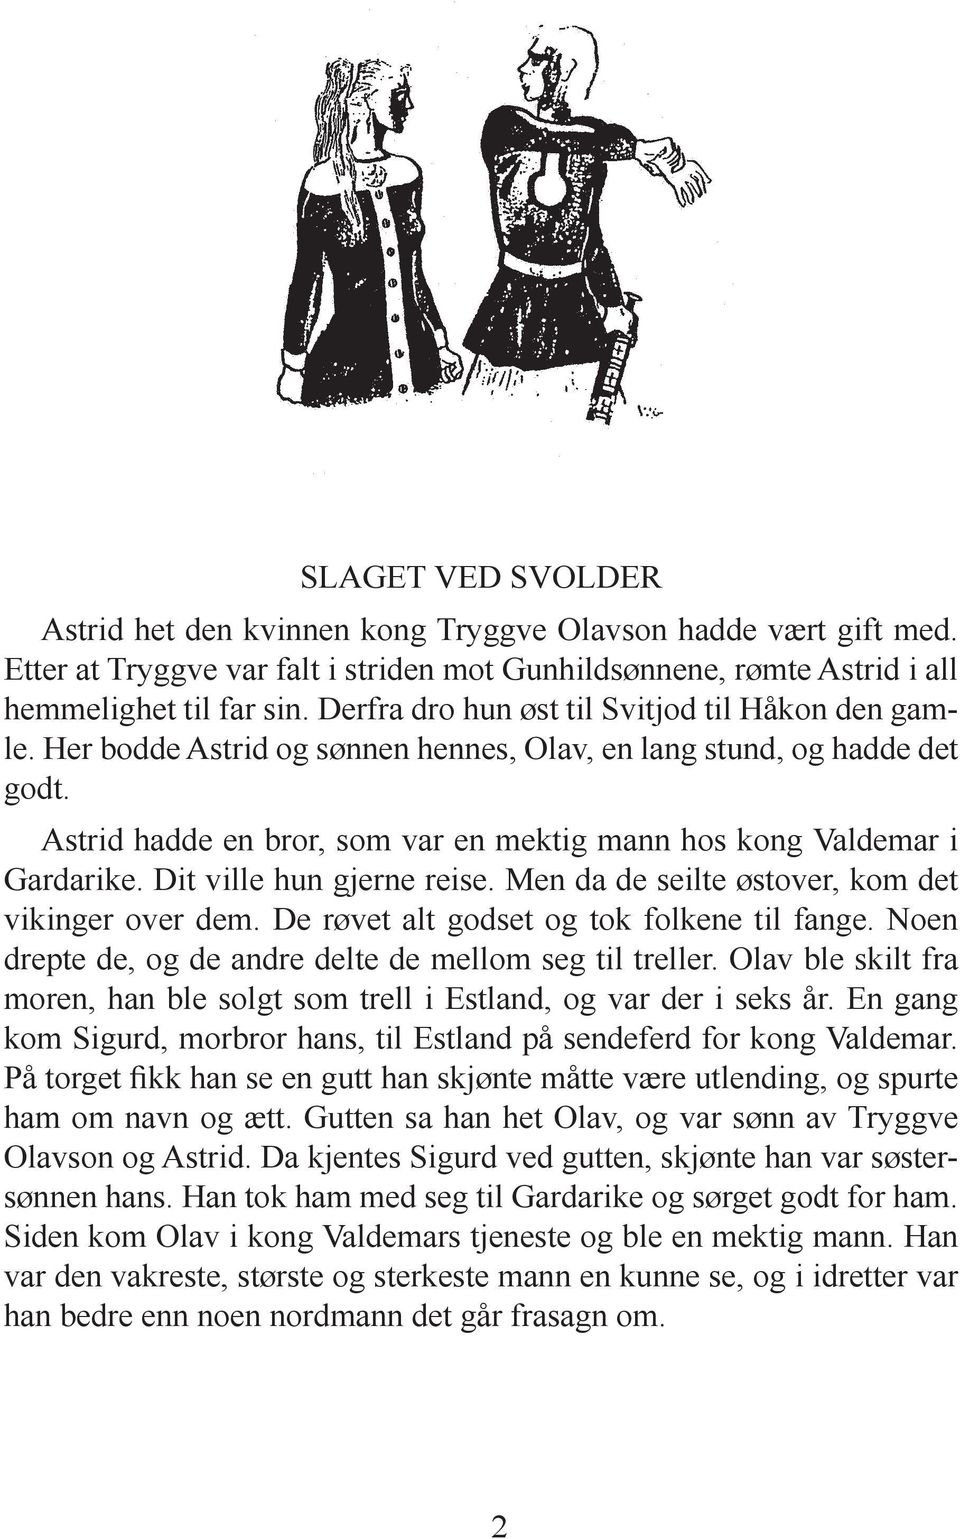 Astrid hadde en bror, som var en mektig mann hos kong Valdemar i Gardarike. Dit ville hun gjerne reise. Men da de seilte østover, kom det vikinger over dem.